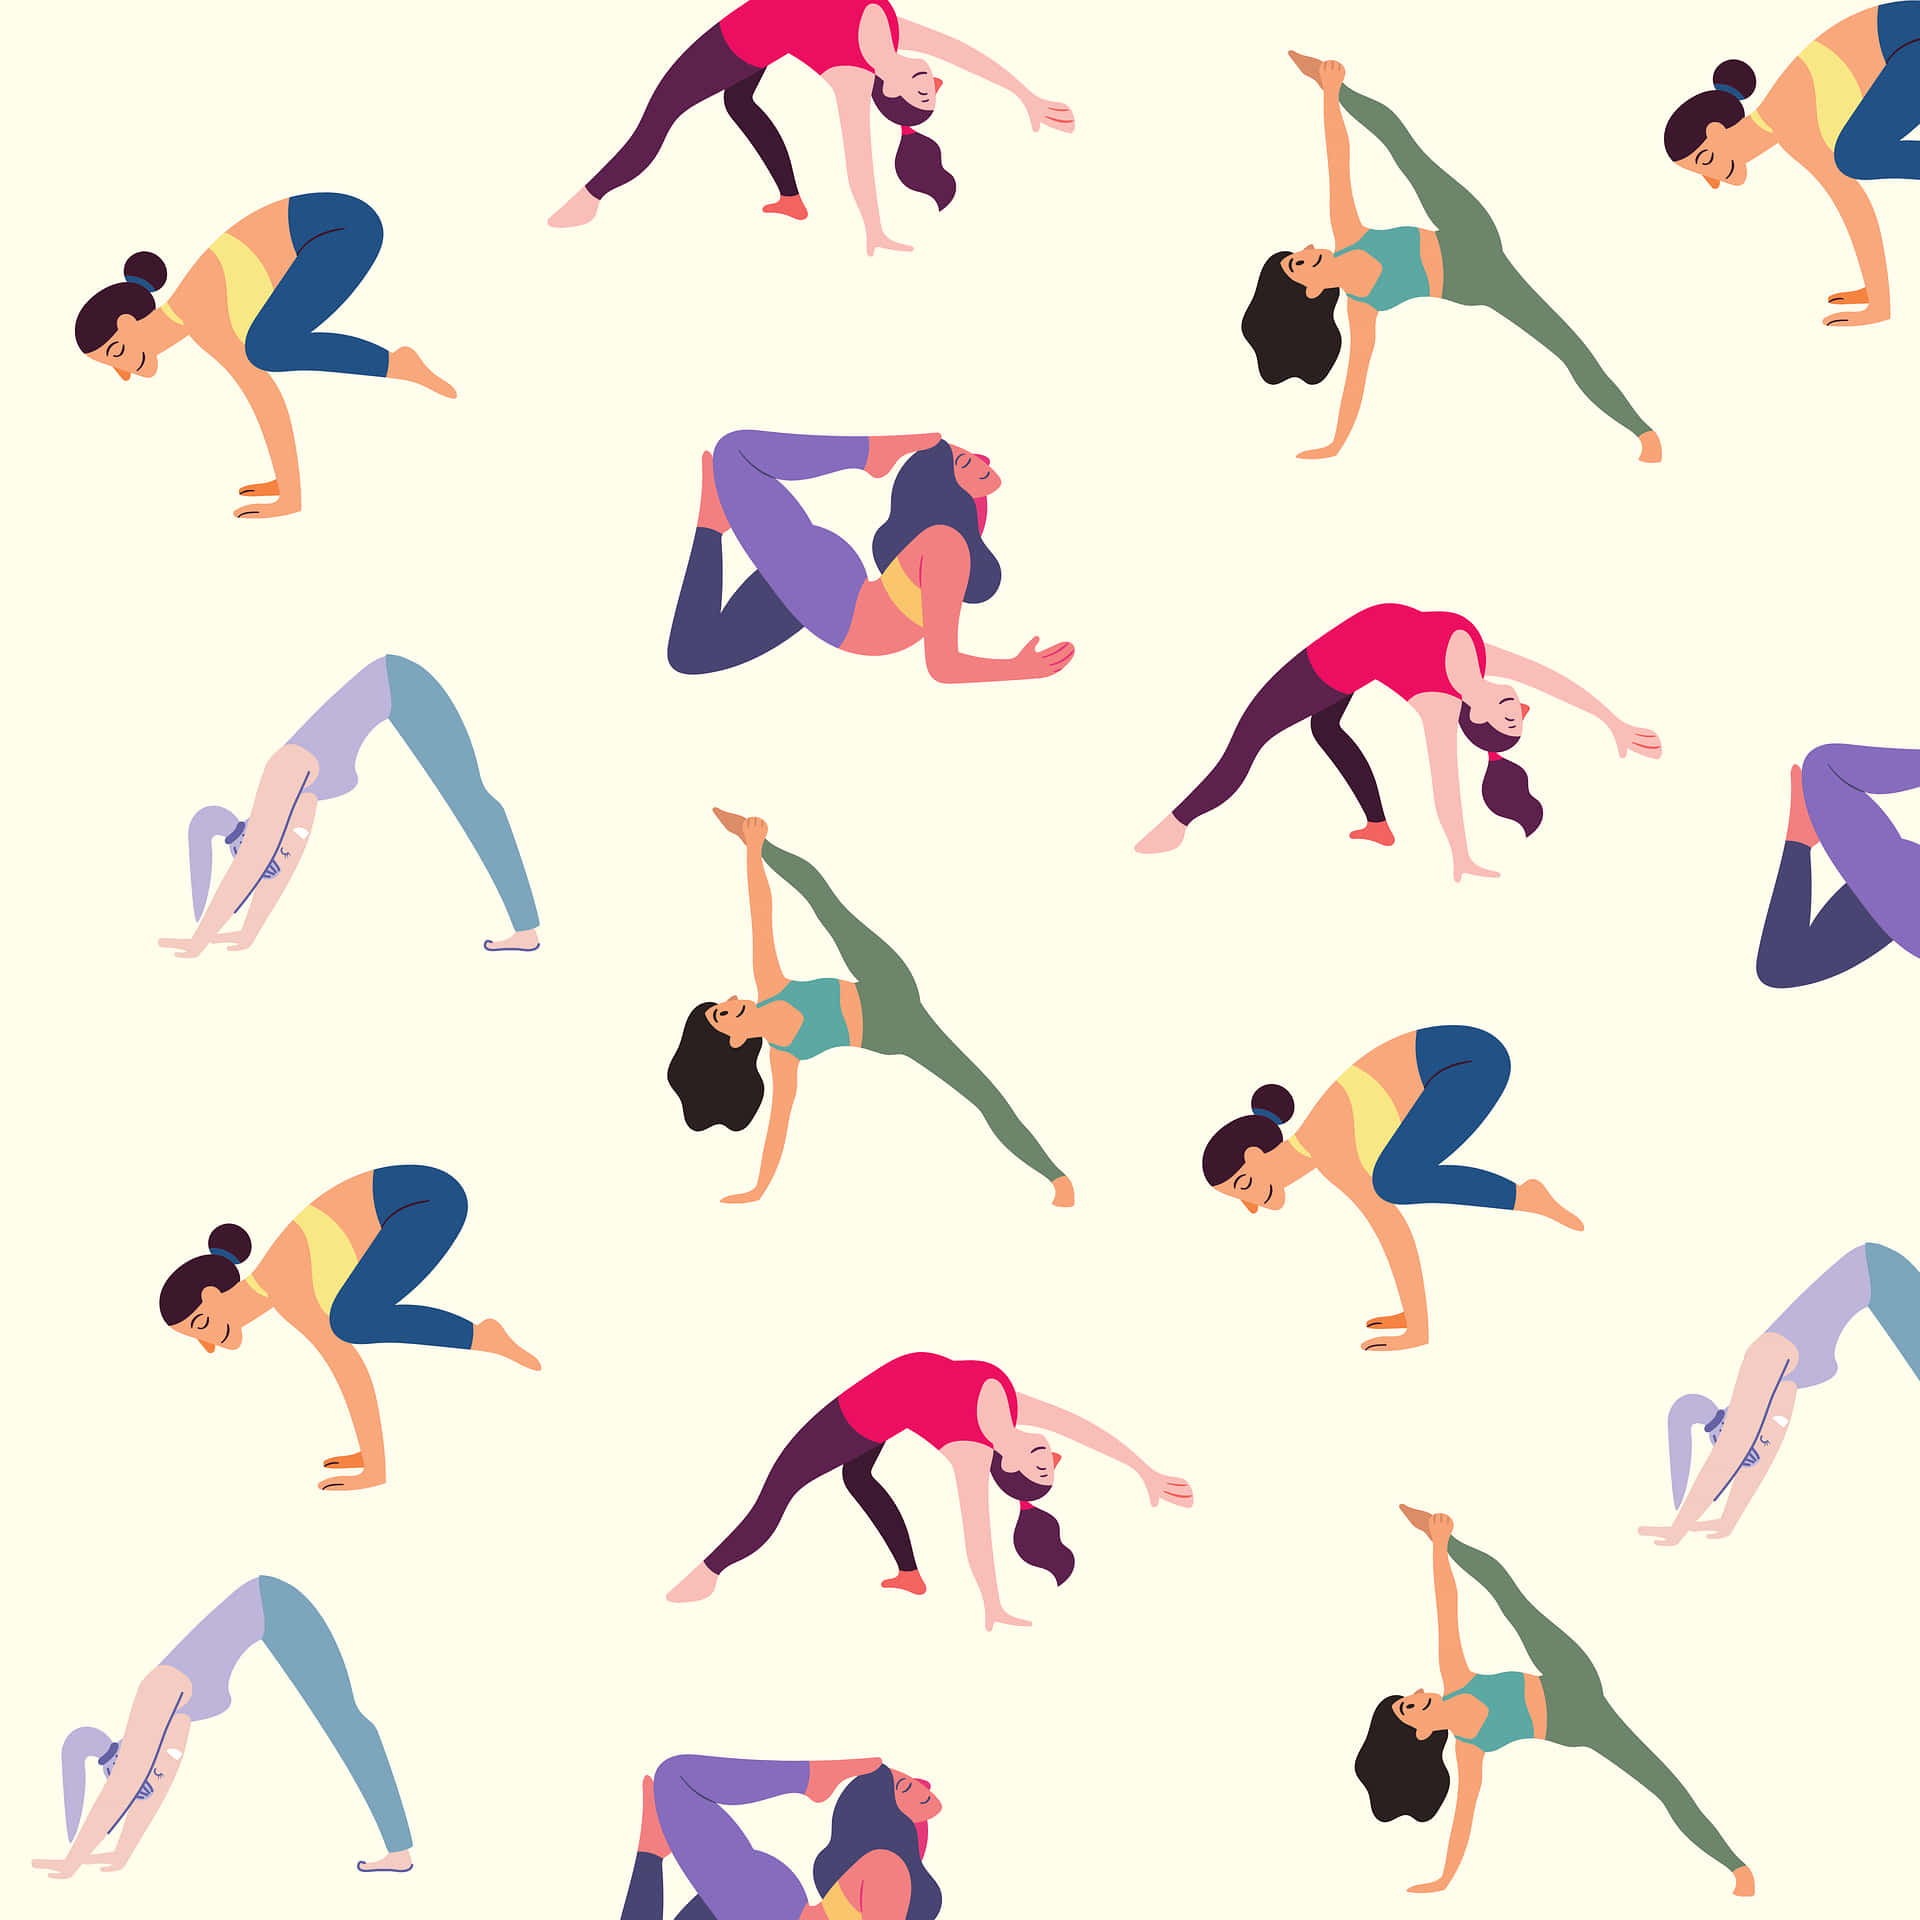 Imagemde Ícone De Garota Fazendo Yoga Para Exercício Como Papel De Parede De Computador Ou Celular.